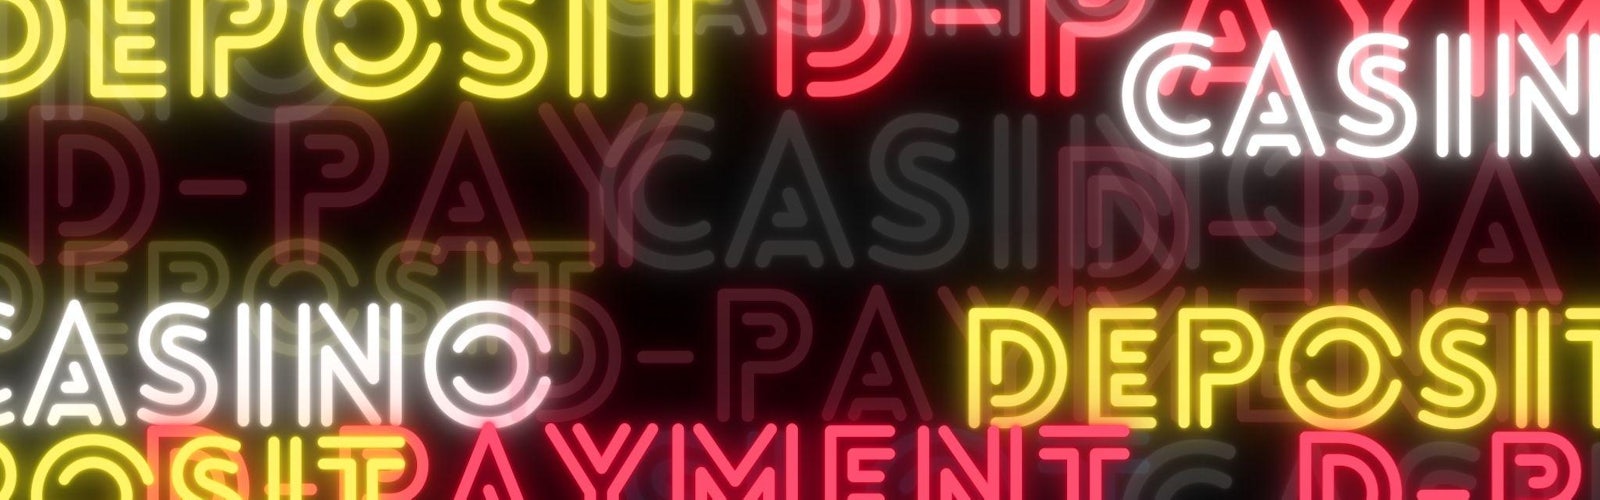 黒い背景に、ネオン風の赤と黄色と白のフォントでCasino D-payment depositとバラバラに書かれている様子